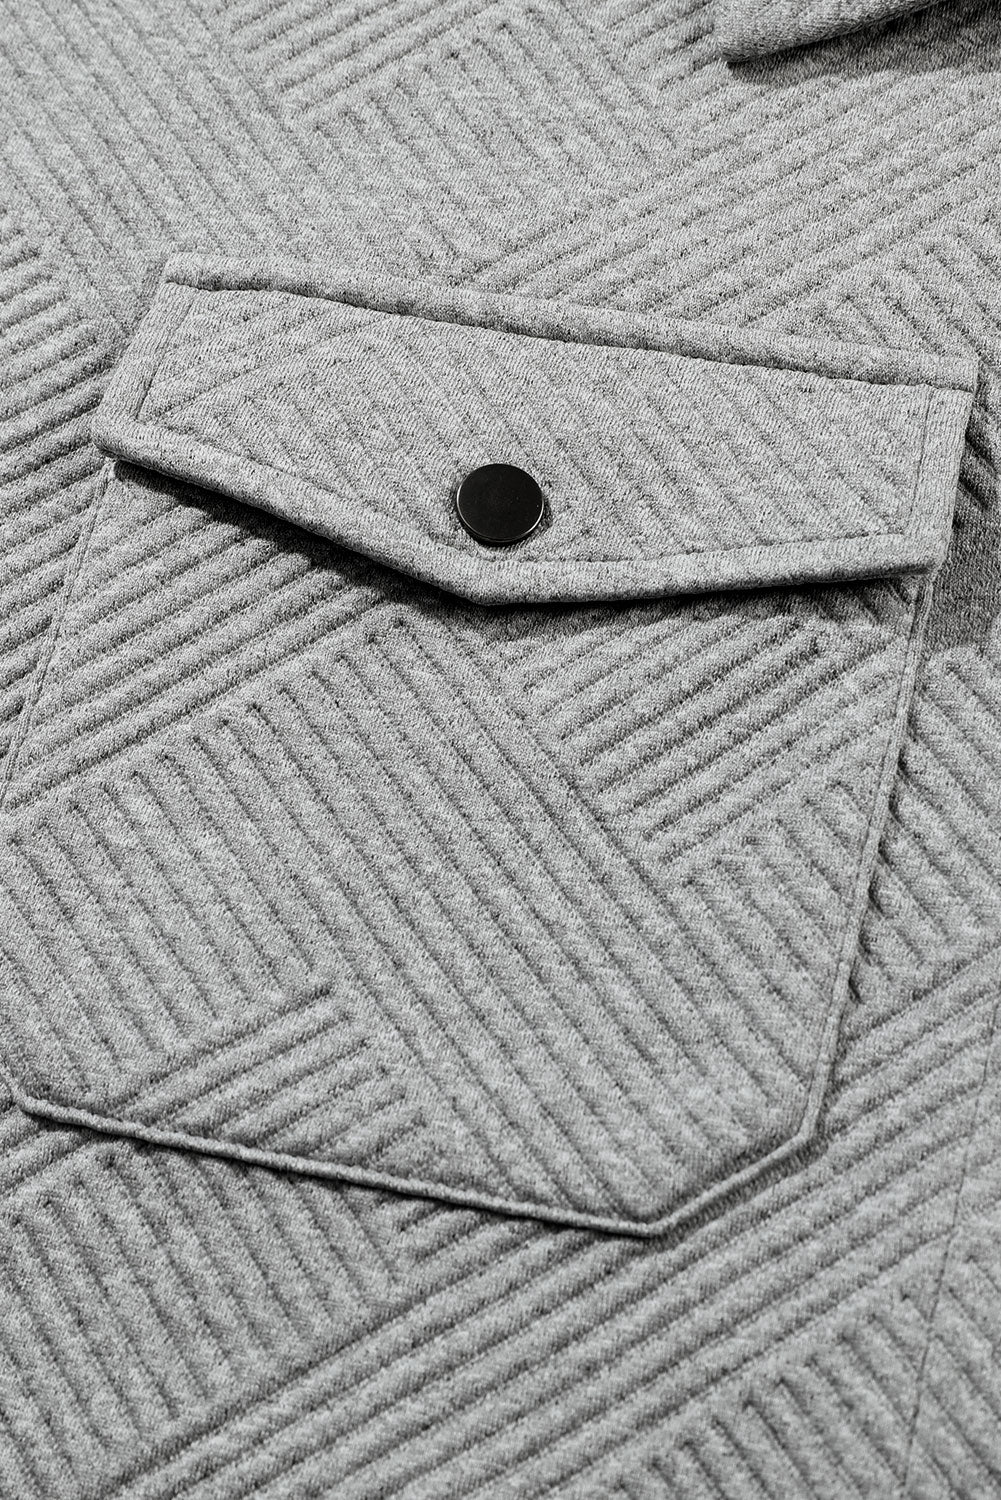 Giacca abbottonata con tasca con patta strutturata nera solida